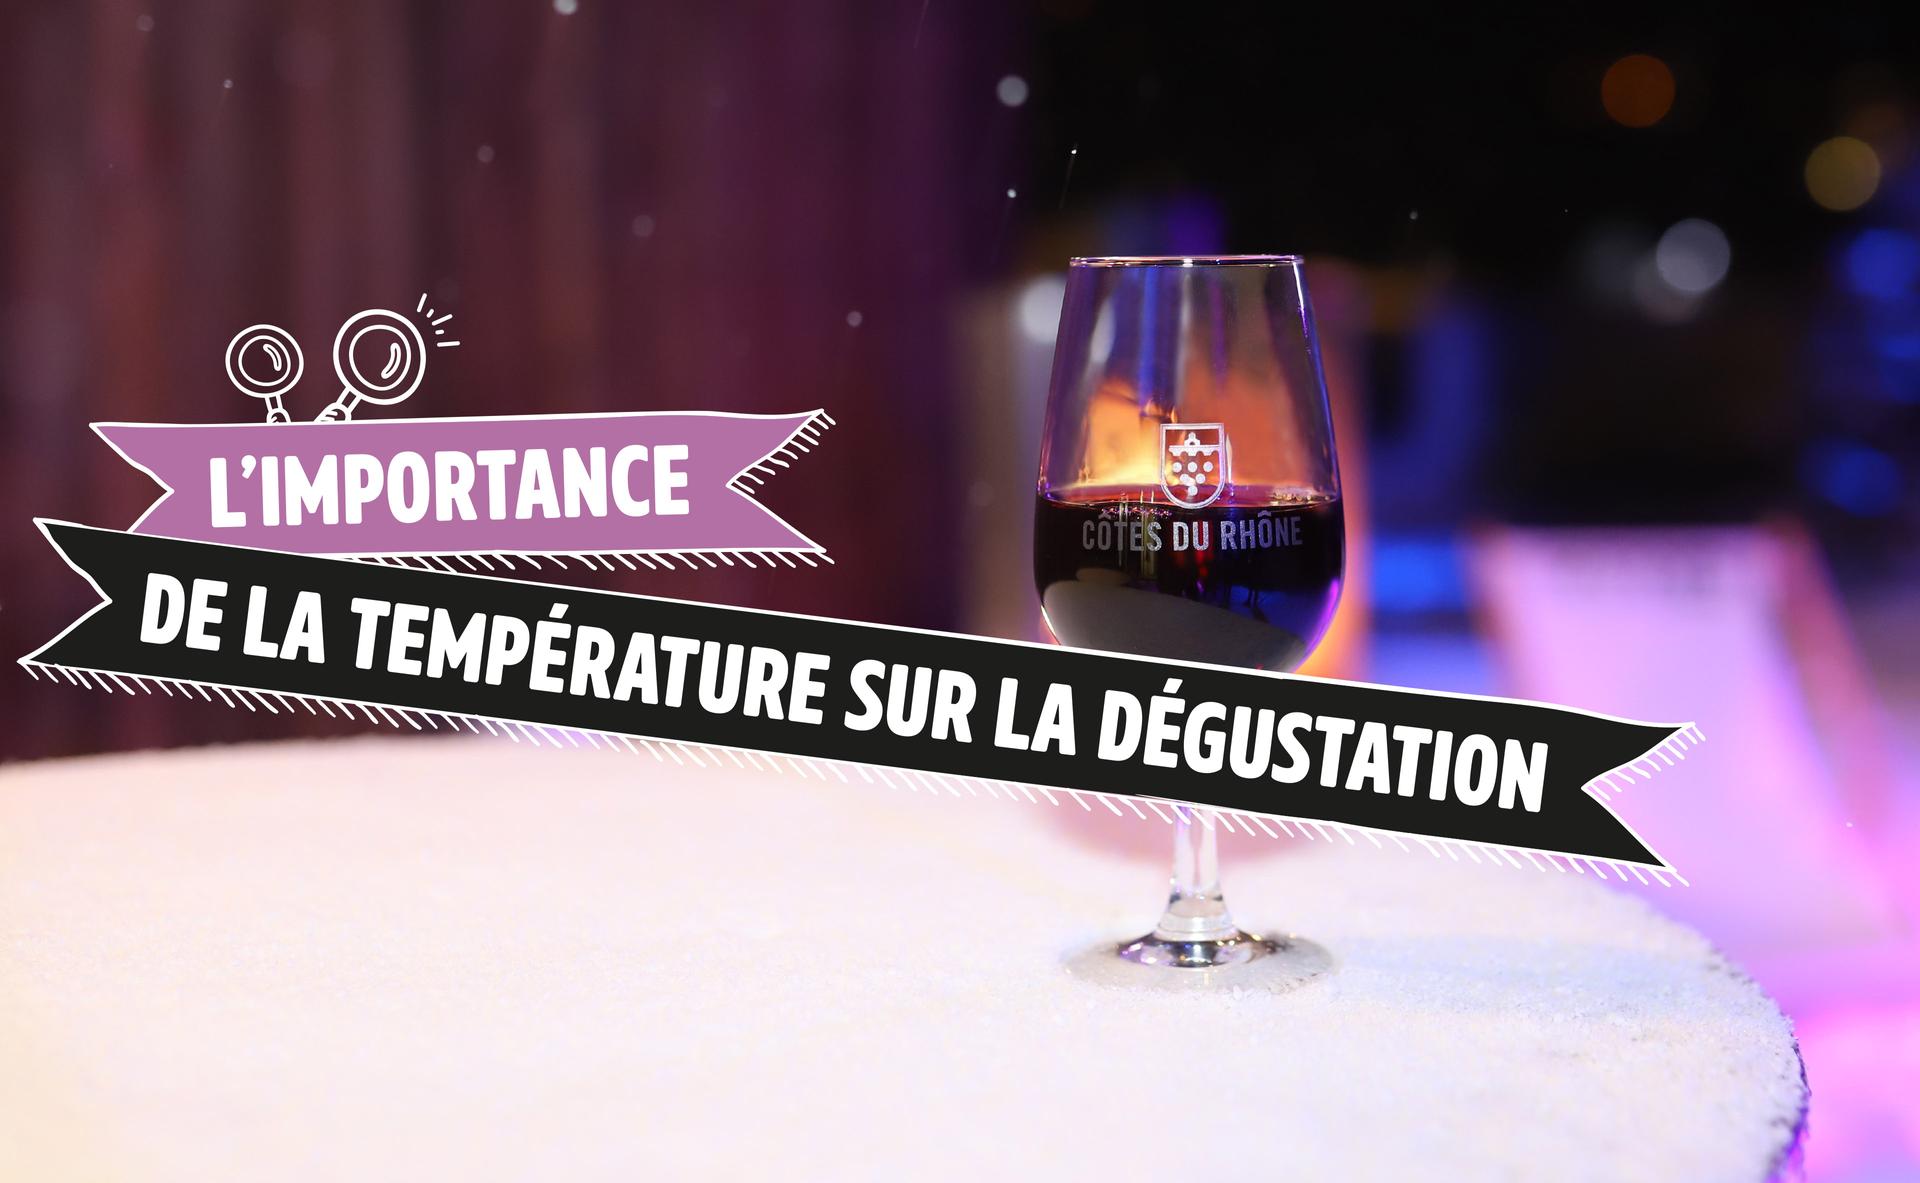 L'importance de la température sur la dégustation : démonstration avec les Côtes-du-Rhône